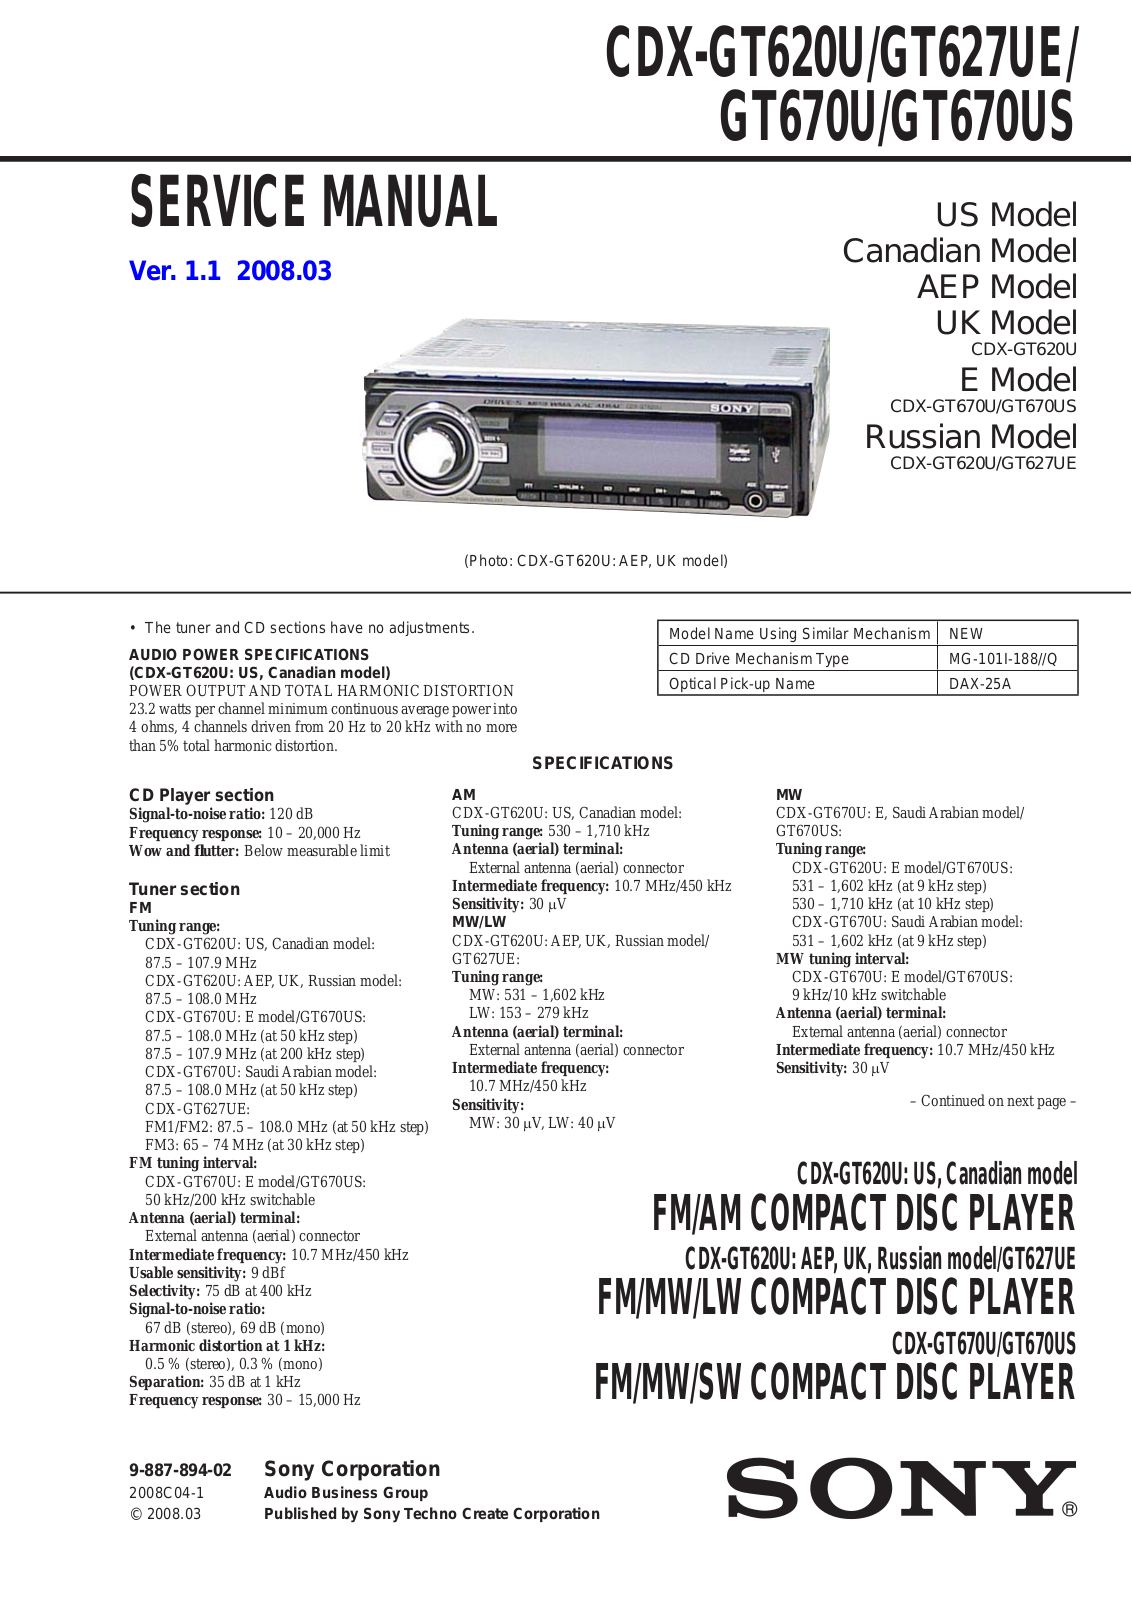 Sony CDXGT-620-U, CDXGT-627-UE, CDXGT-670-U, CDXGT-670-US Service manual